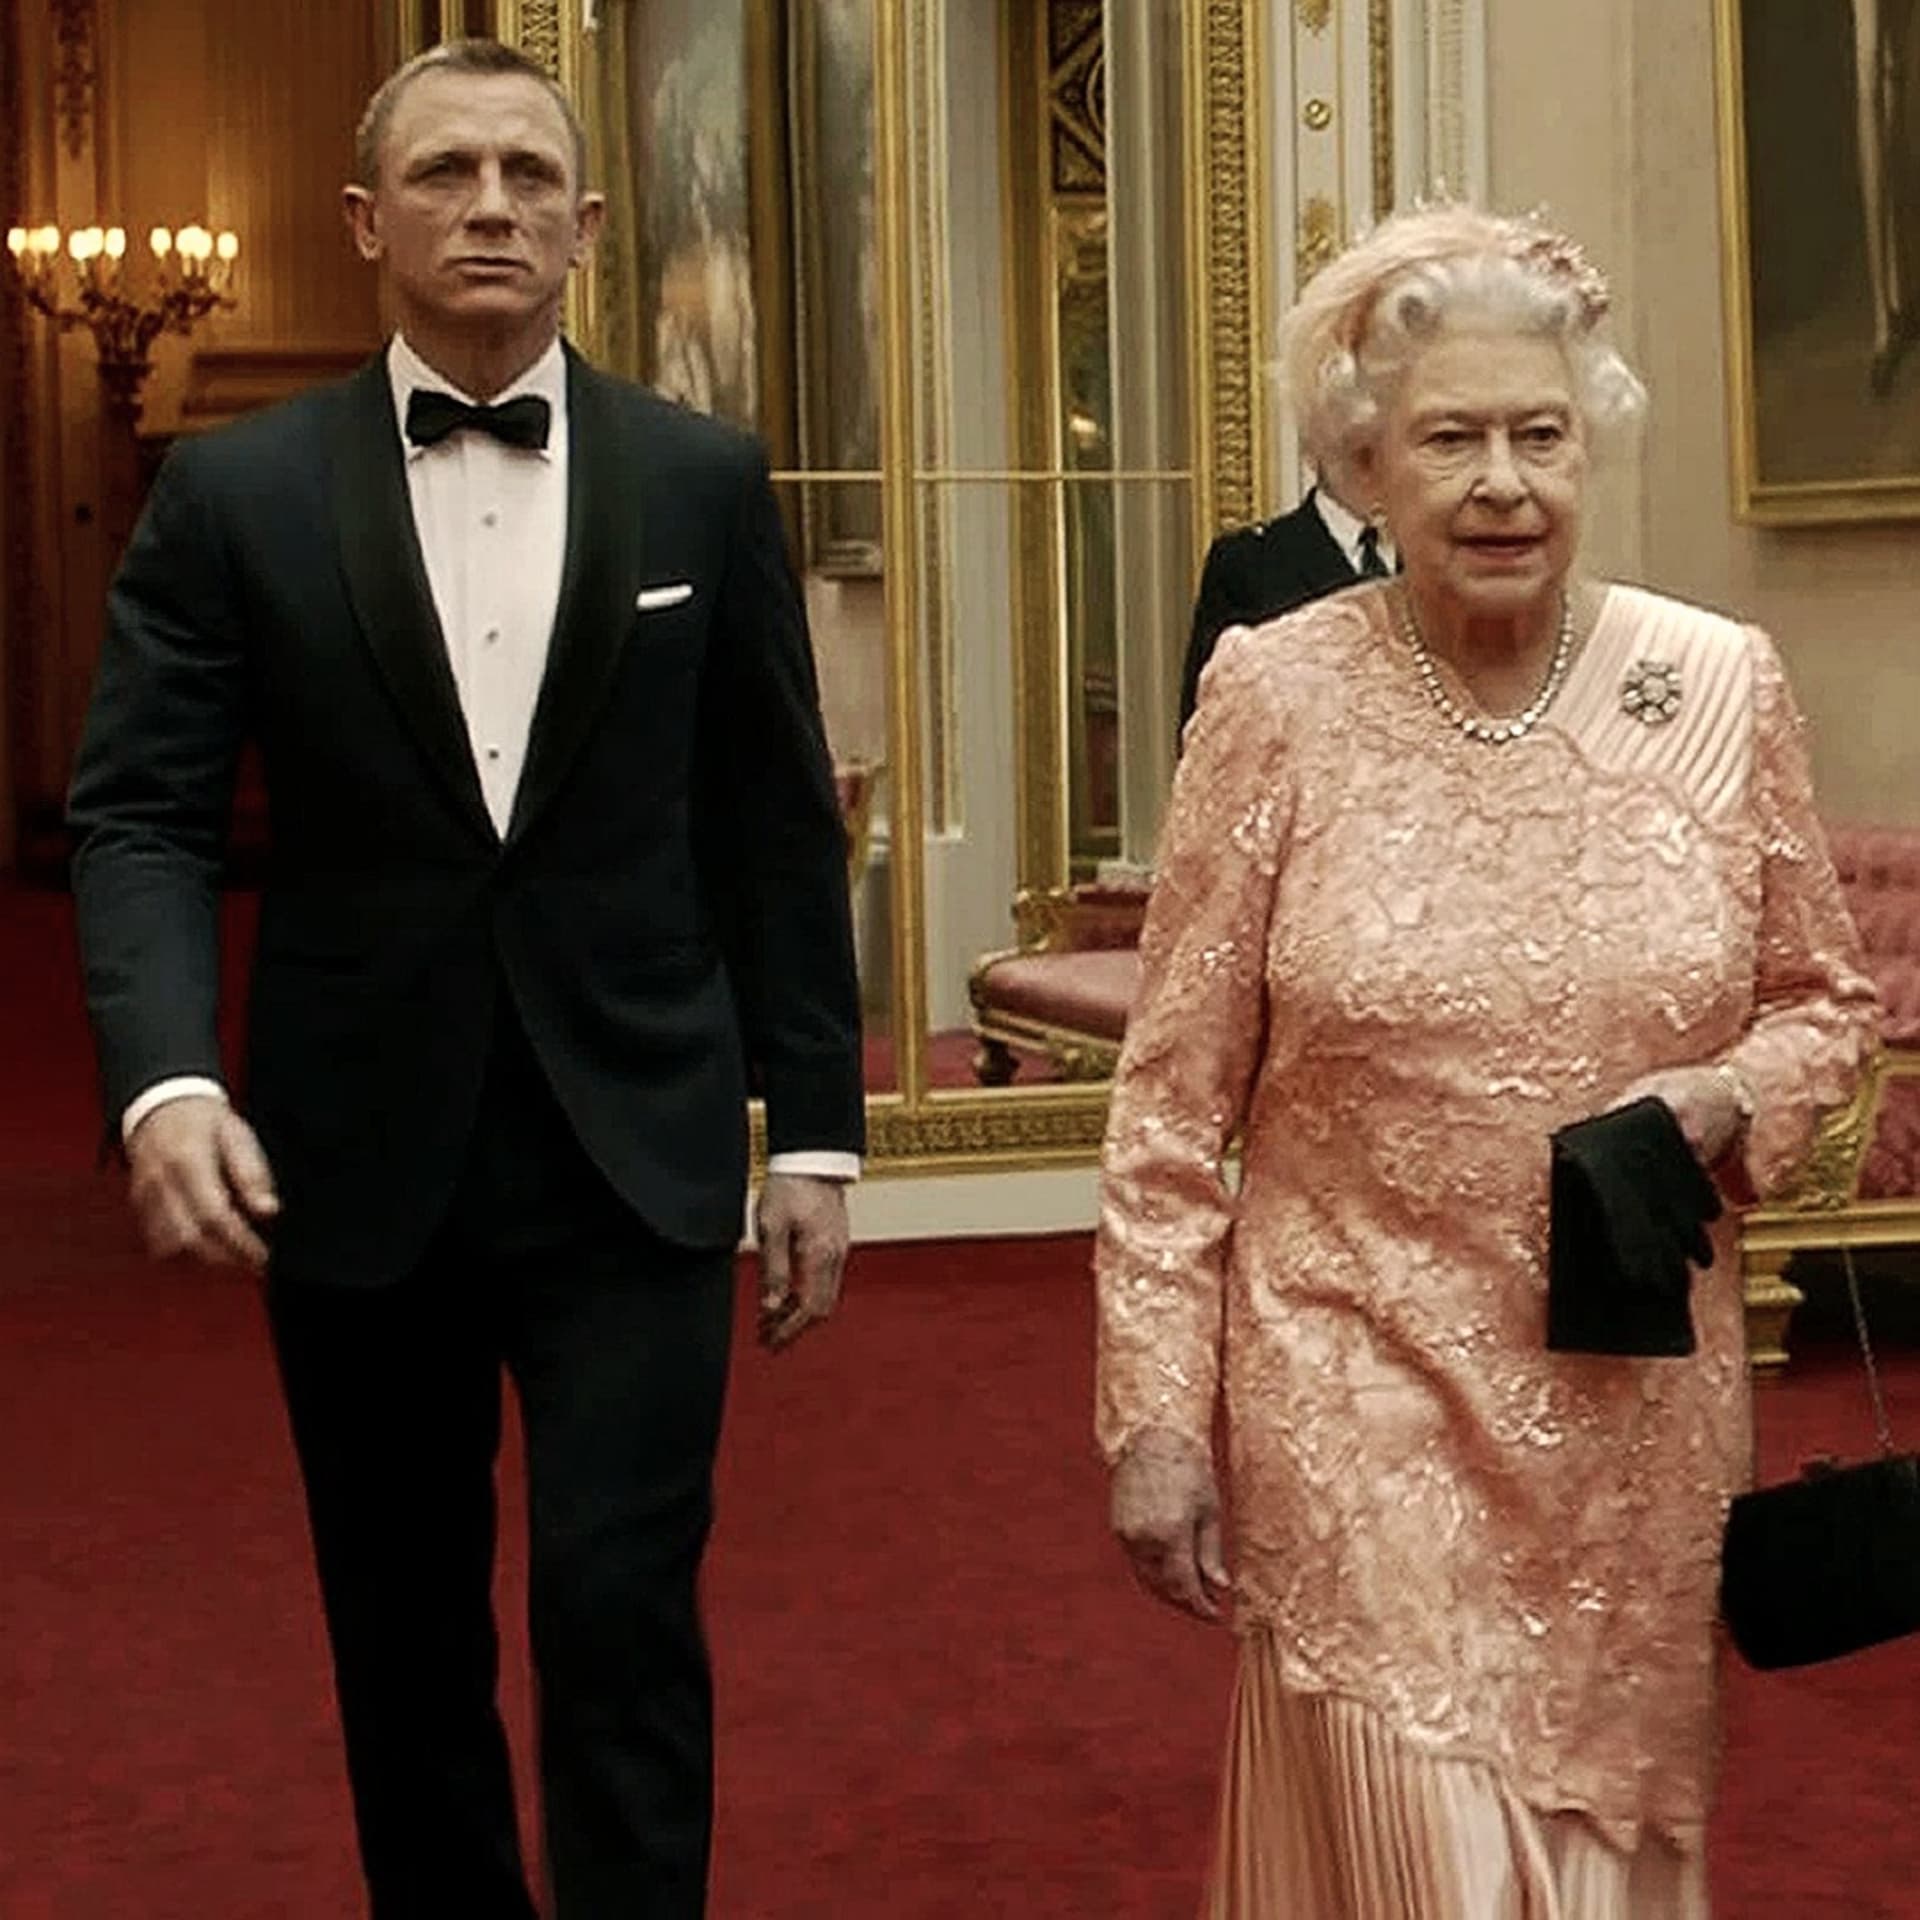 Jaký vtip udělala královna na adresu Jamese Bonda?